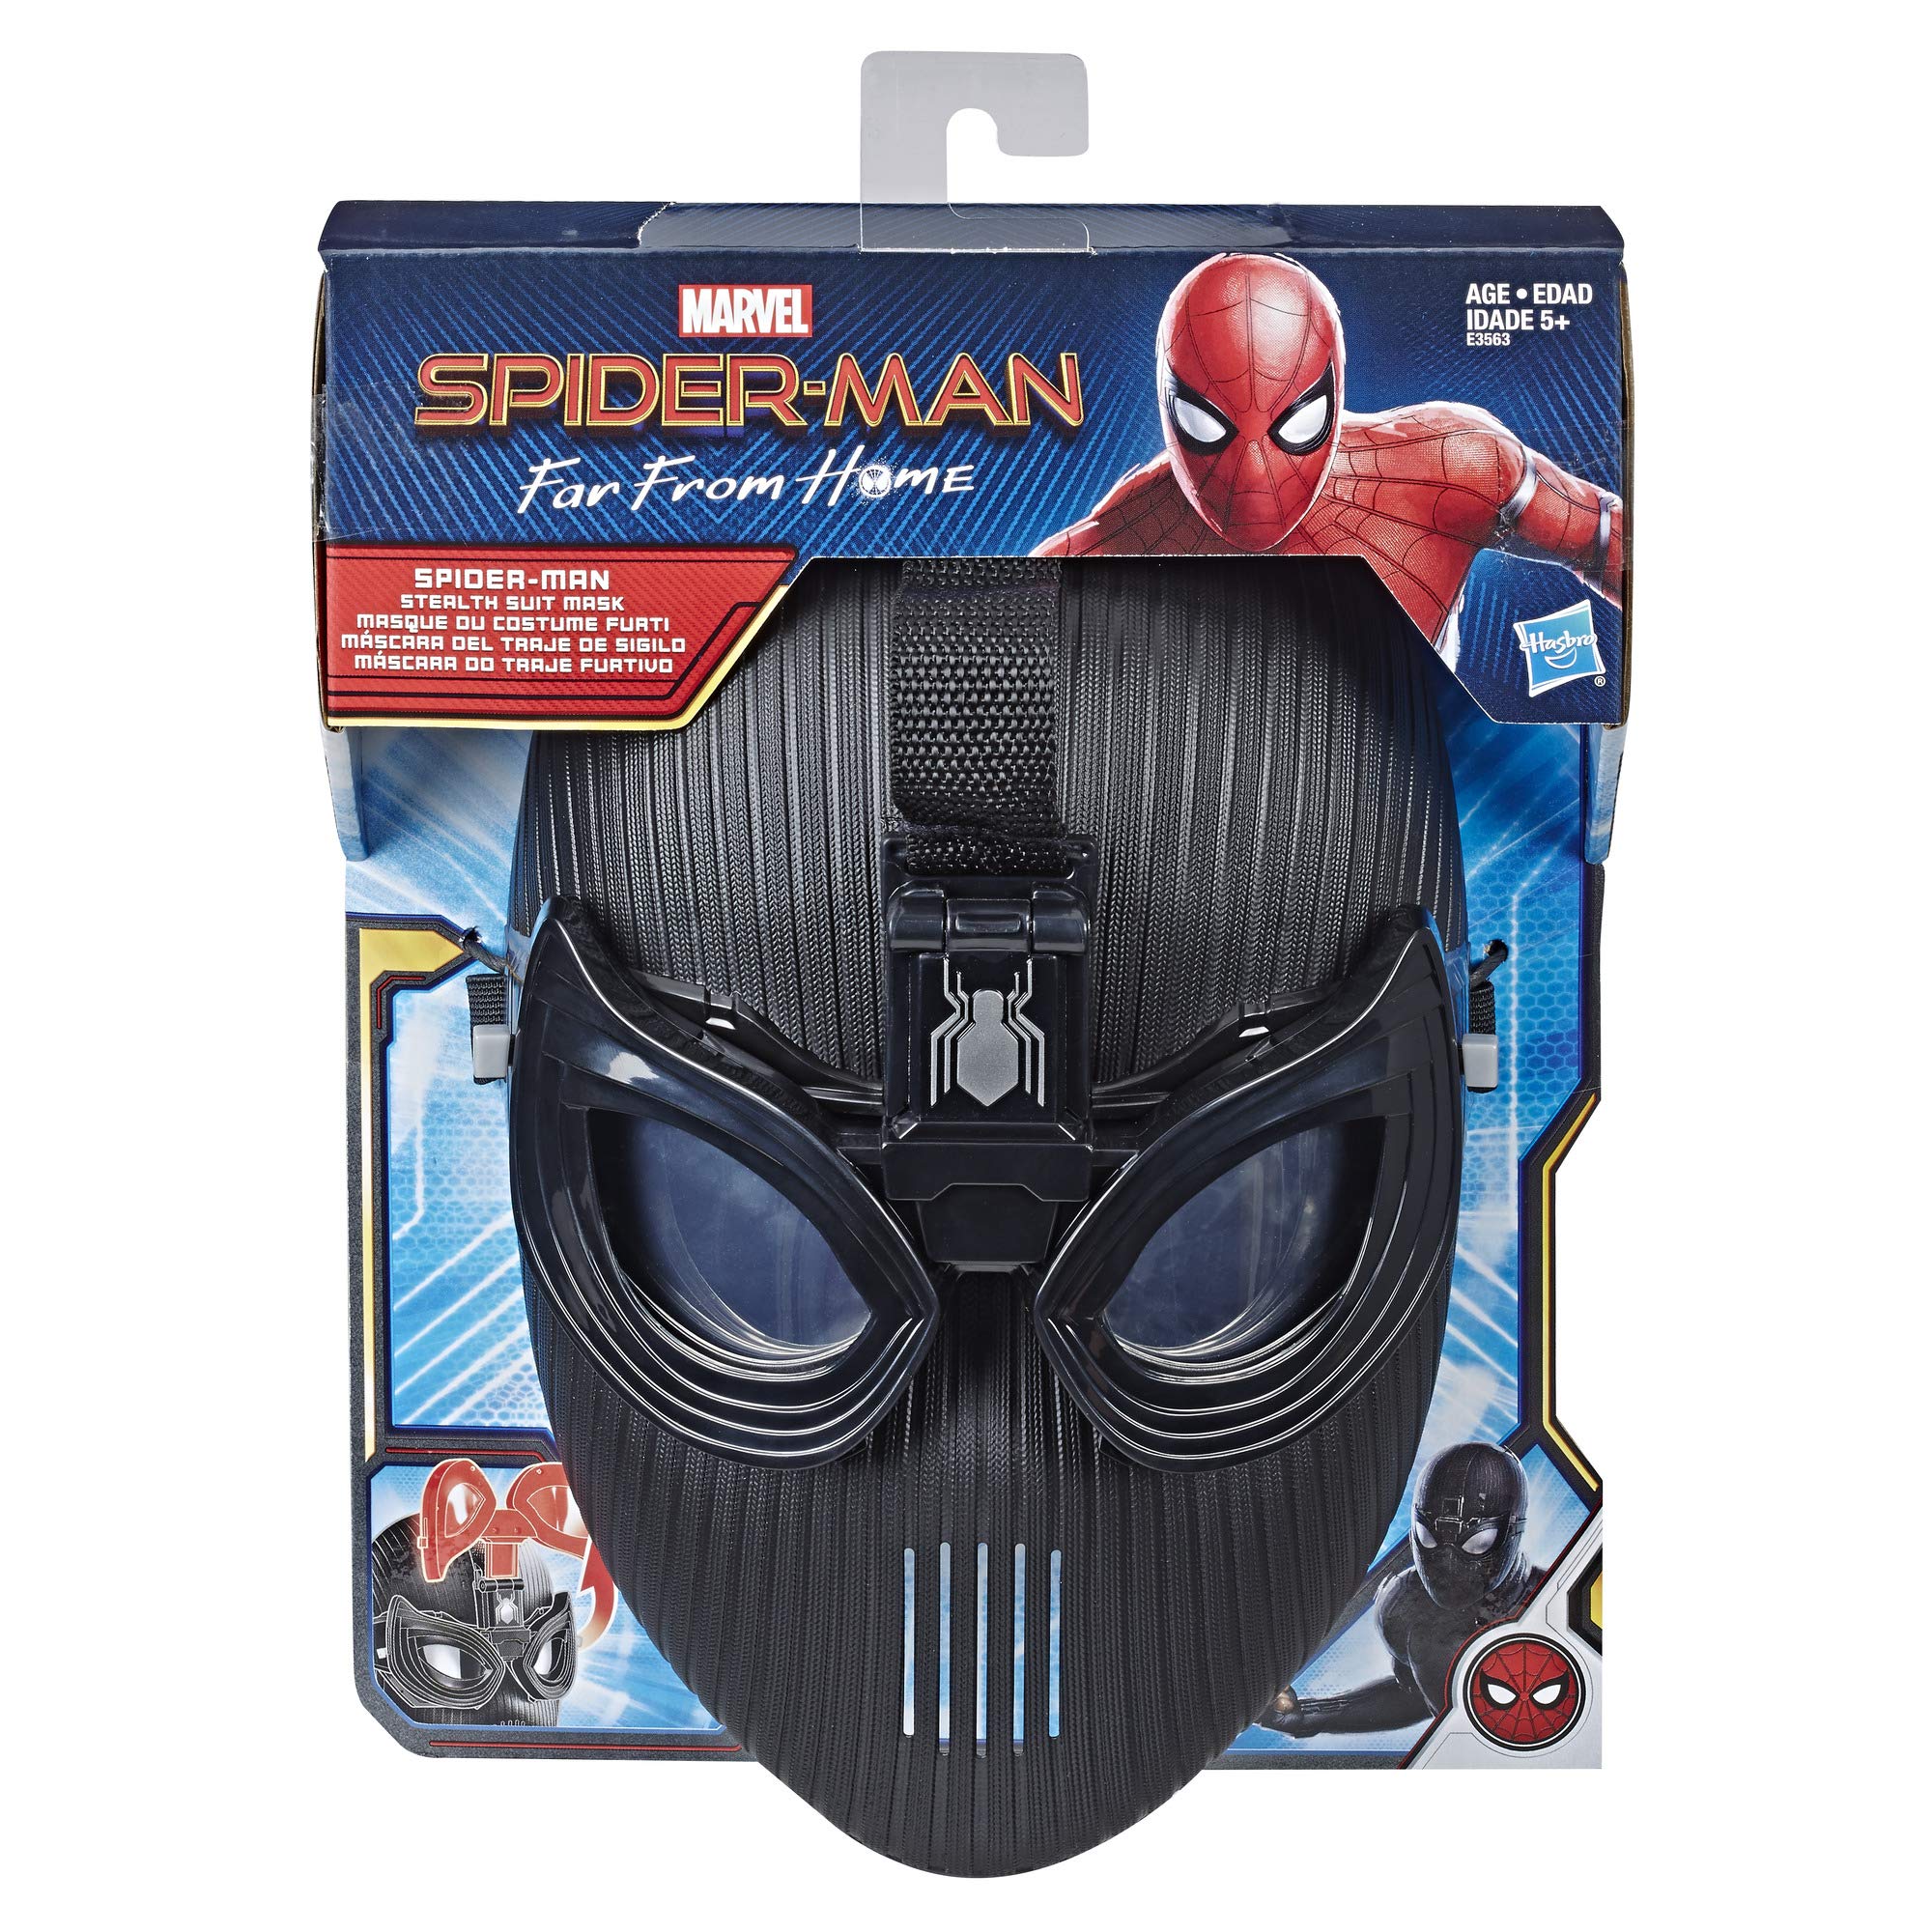 Introducir 56+ imagen mascara de spiderman far from home